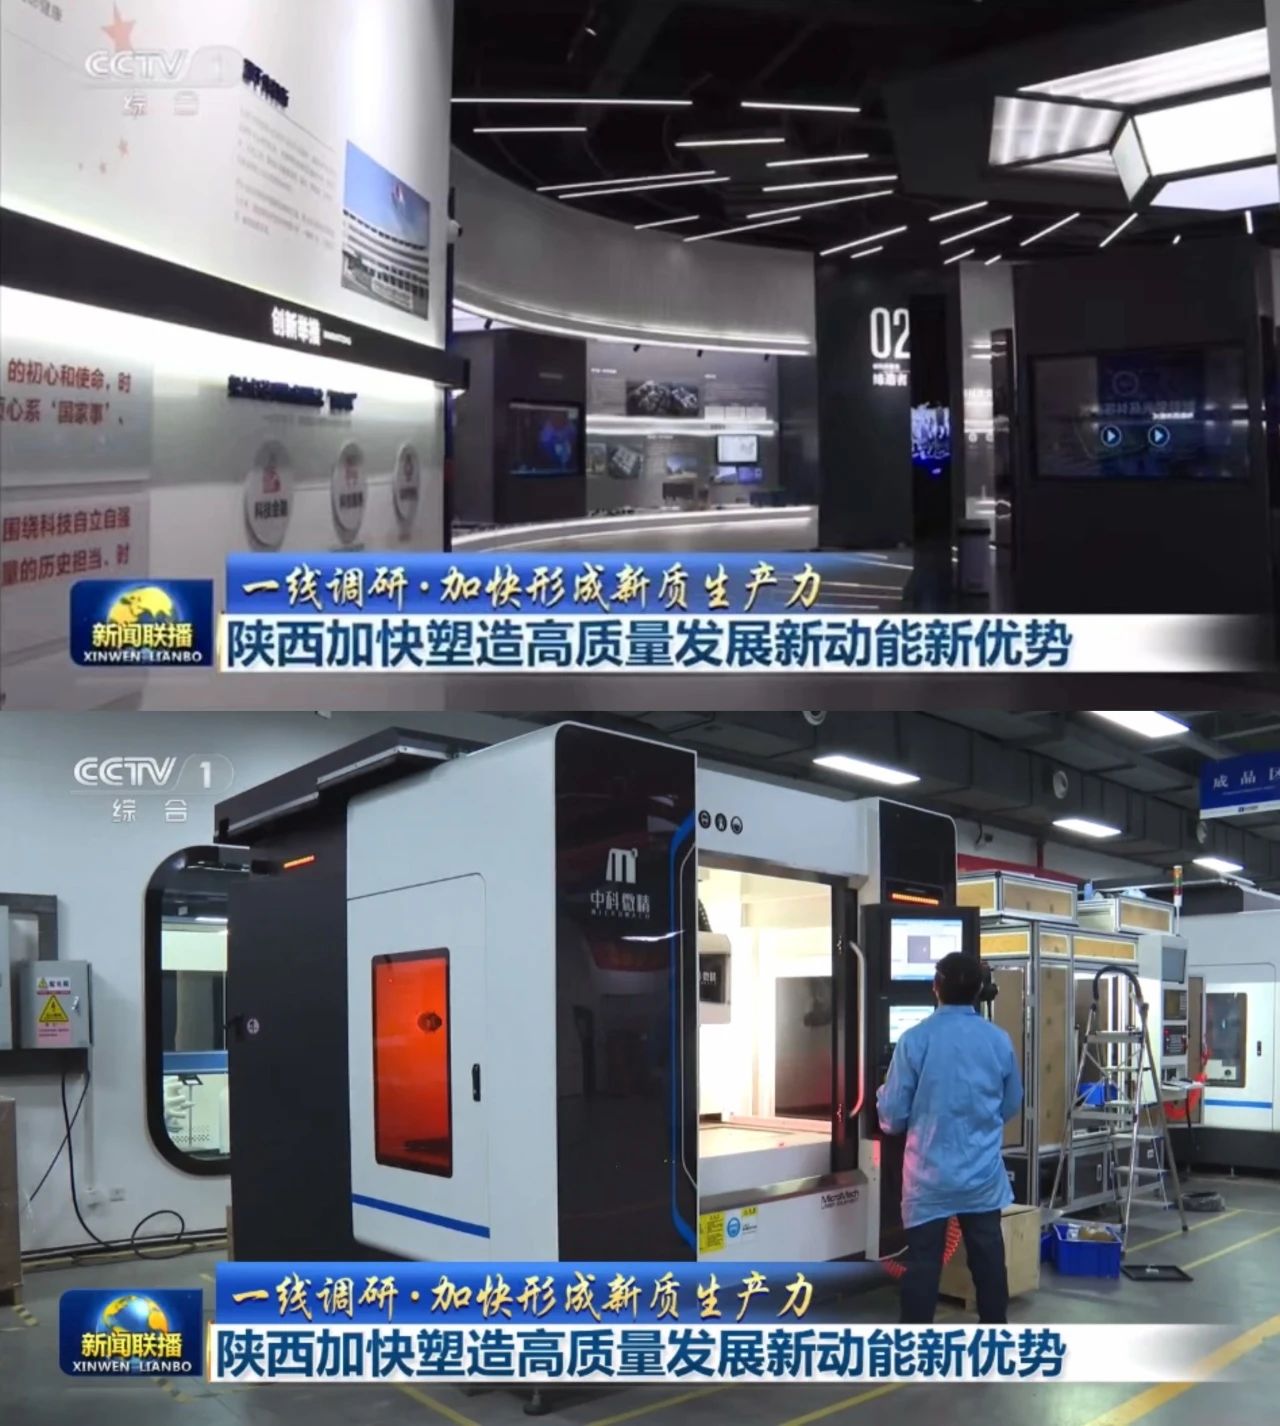 中央电视台 《新闻联播》重点报道「中科微精」「赛富乐斯」| 陕西光子产业高速发展